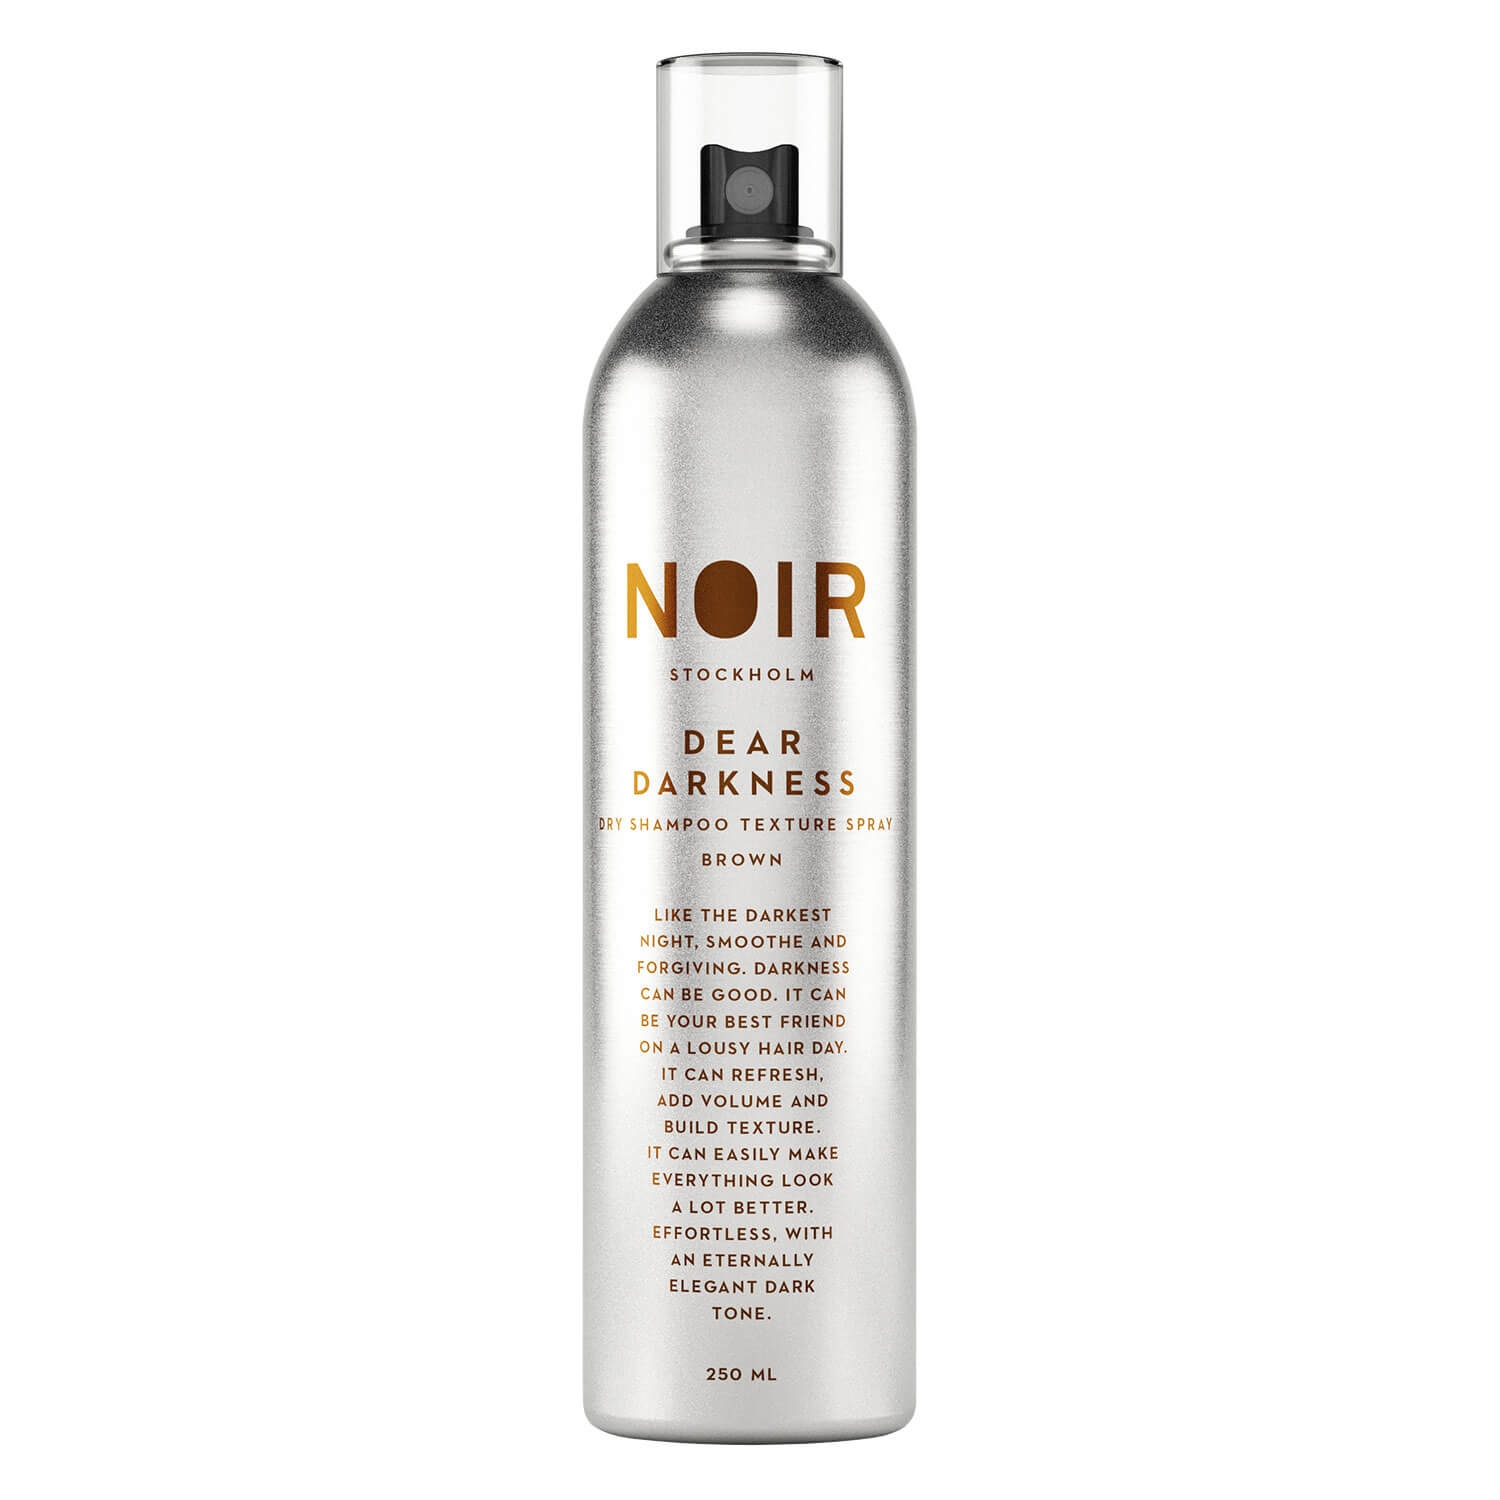 Produktbild von NOIR - Dry Shampoo Brown Dear Darkness